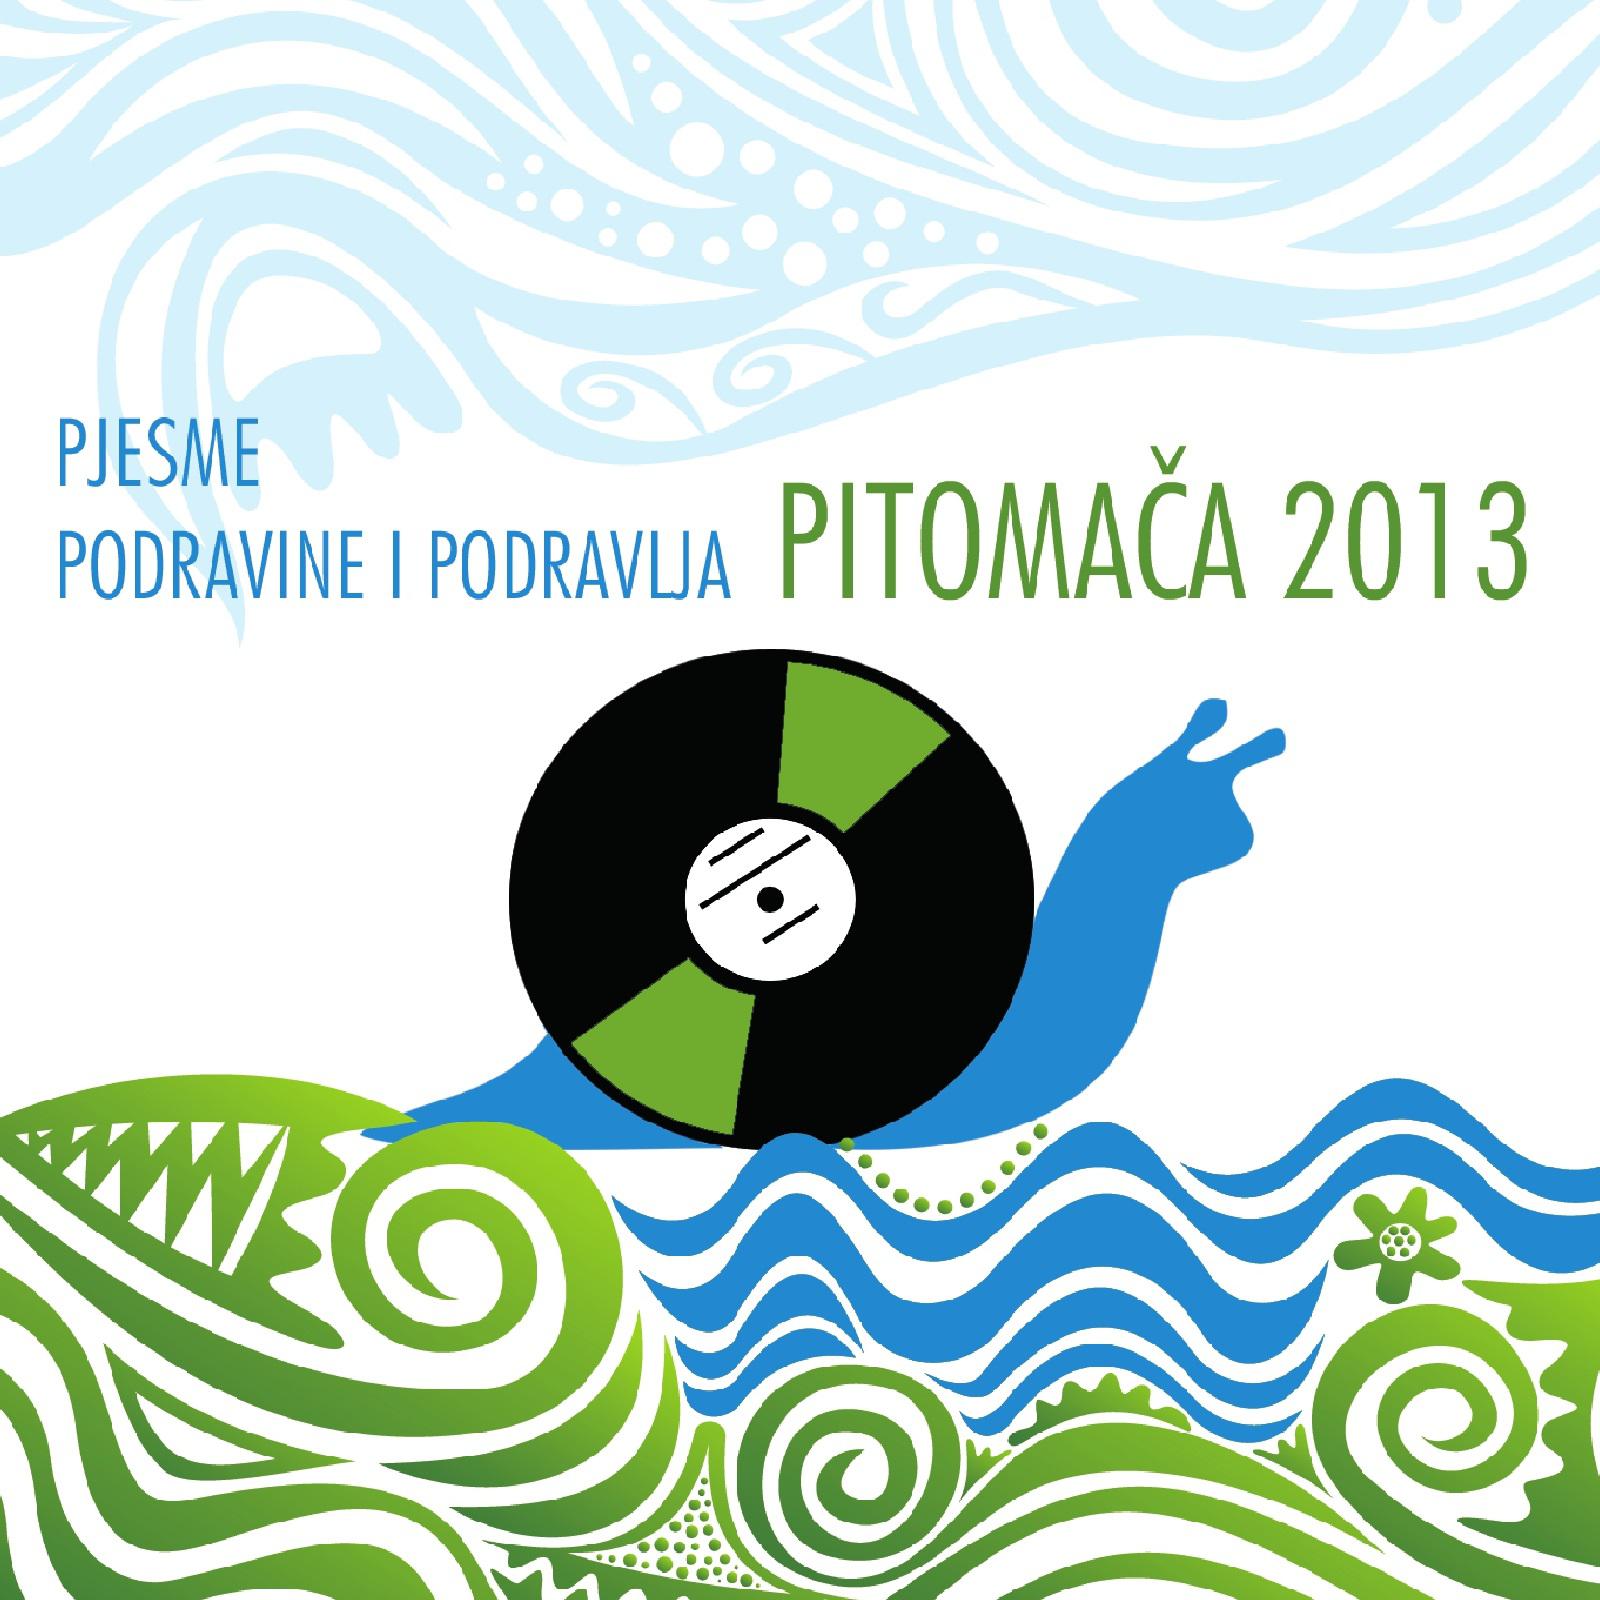 Pjesme Podravine I Podravlja  Pitoma a 2013